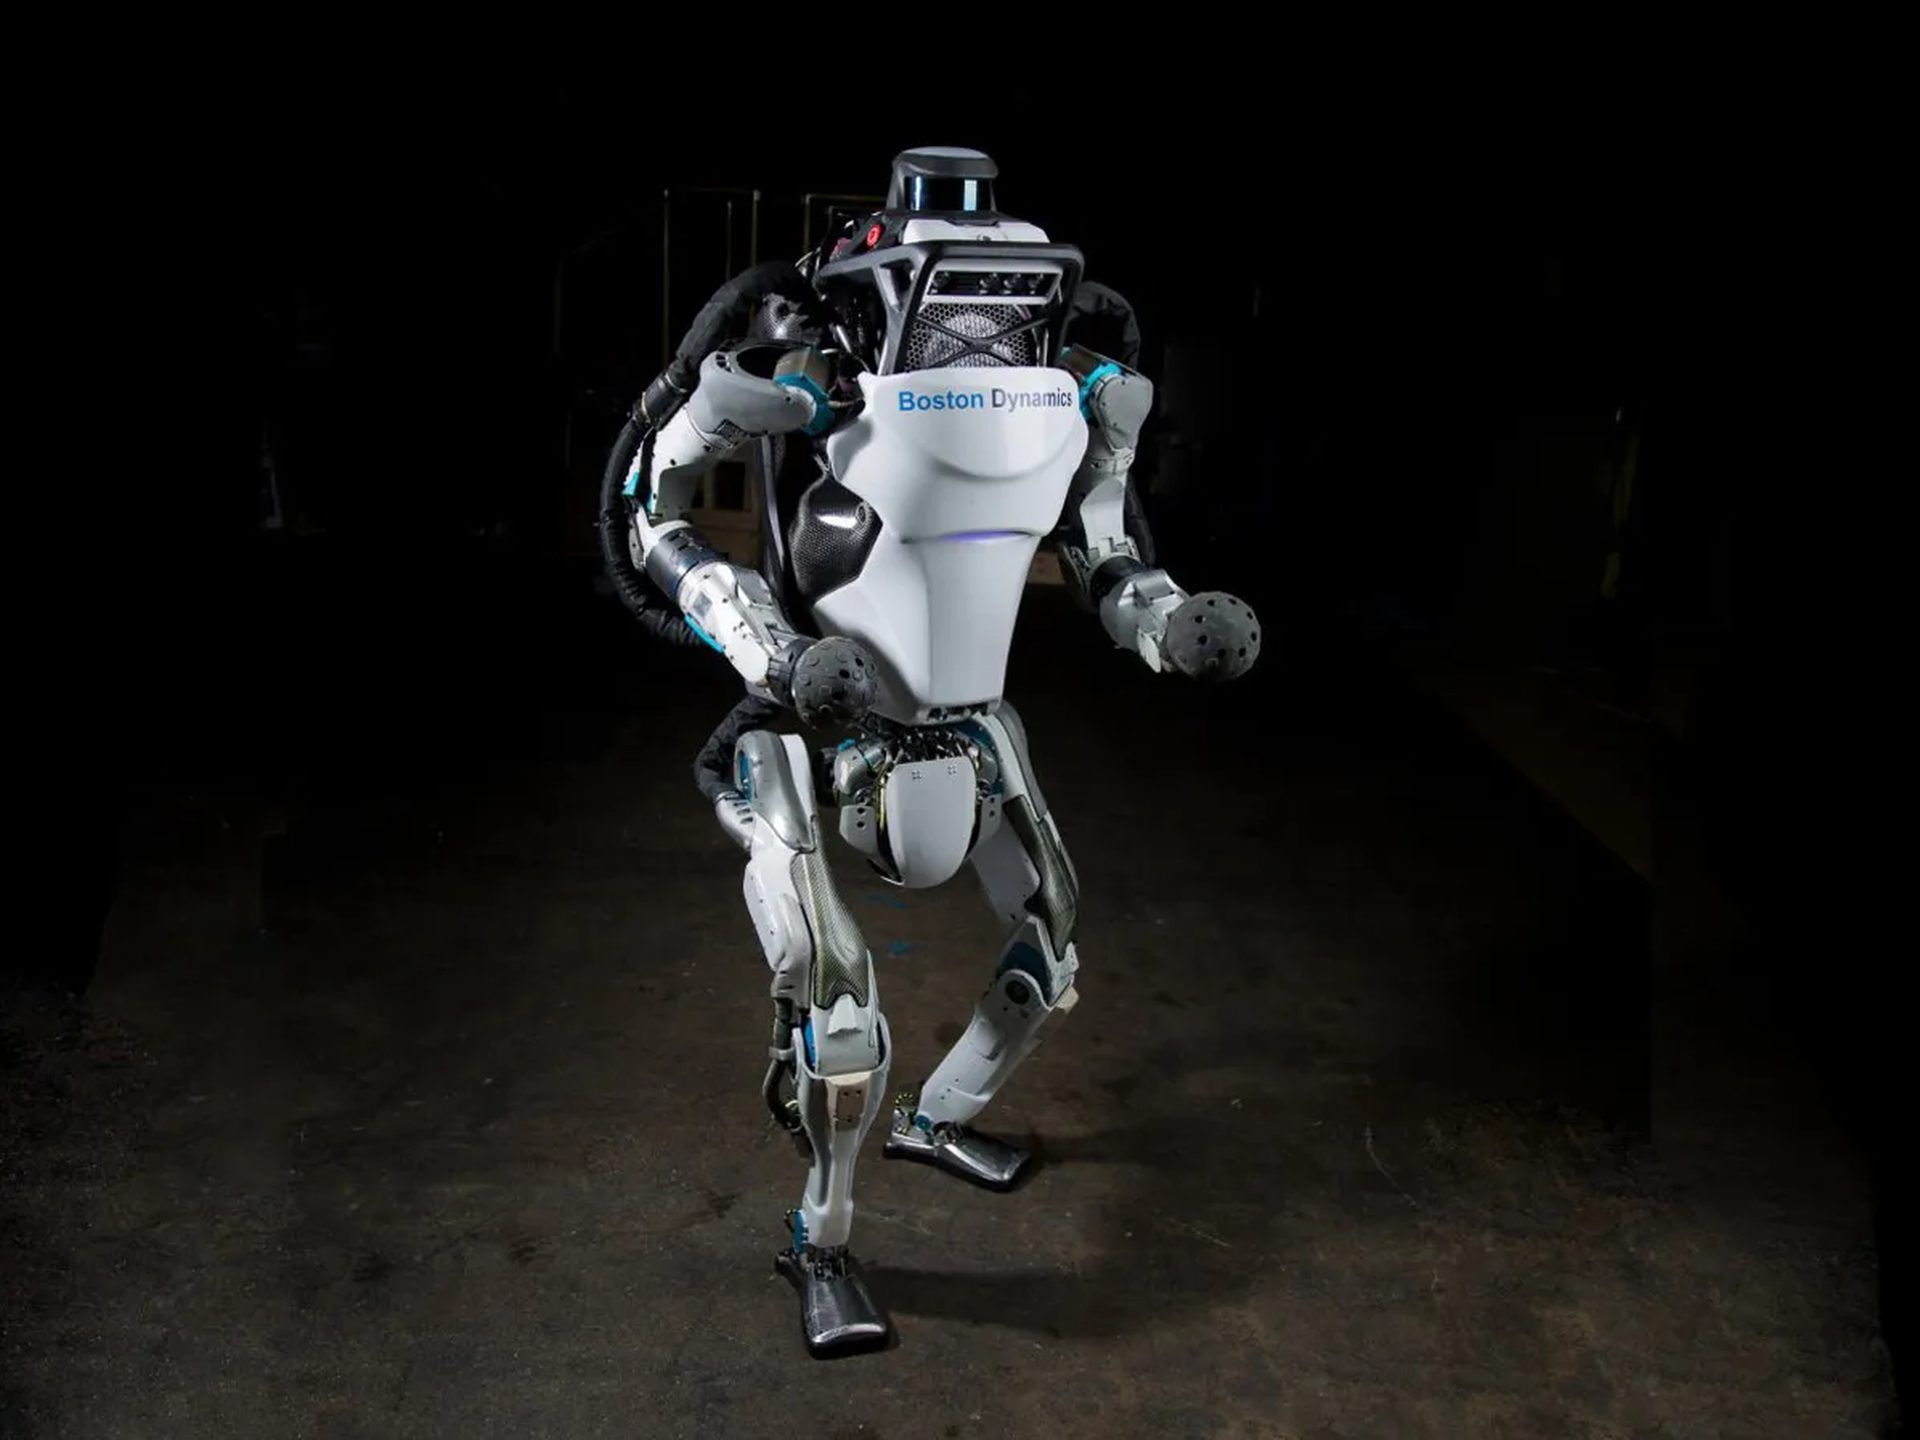 Come guadagna Boston Dynamics?